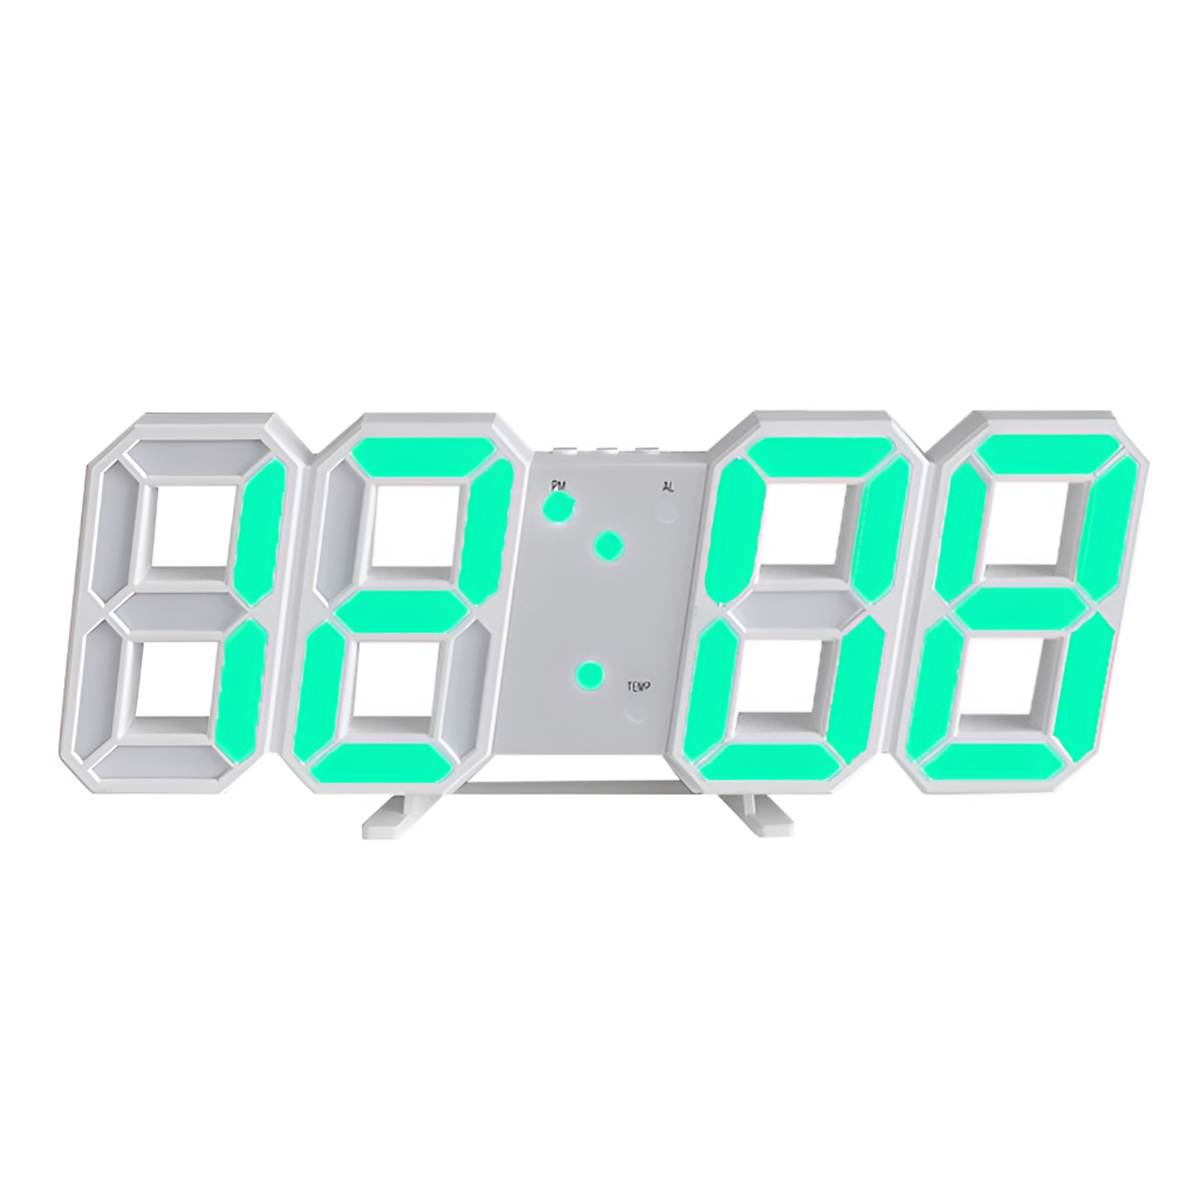 BRIGHTAKE 3D digitaler Wecker-Leuchte-Leuchtdarsteller, Alarm Temperaturanzeige, Temperaturanzeige